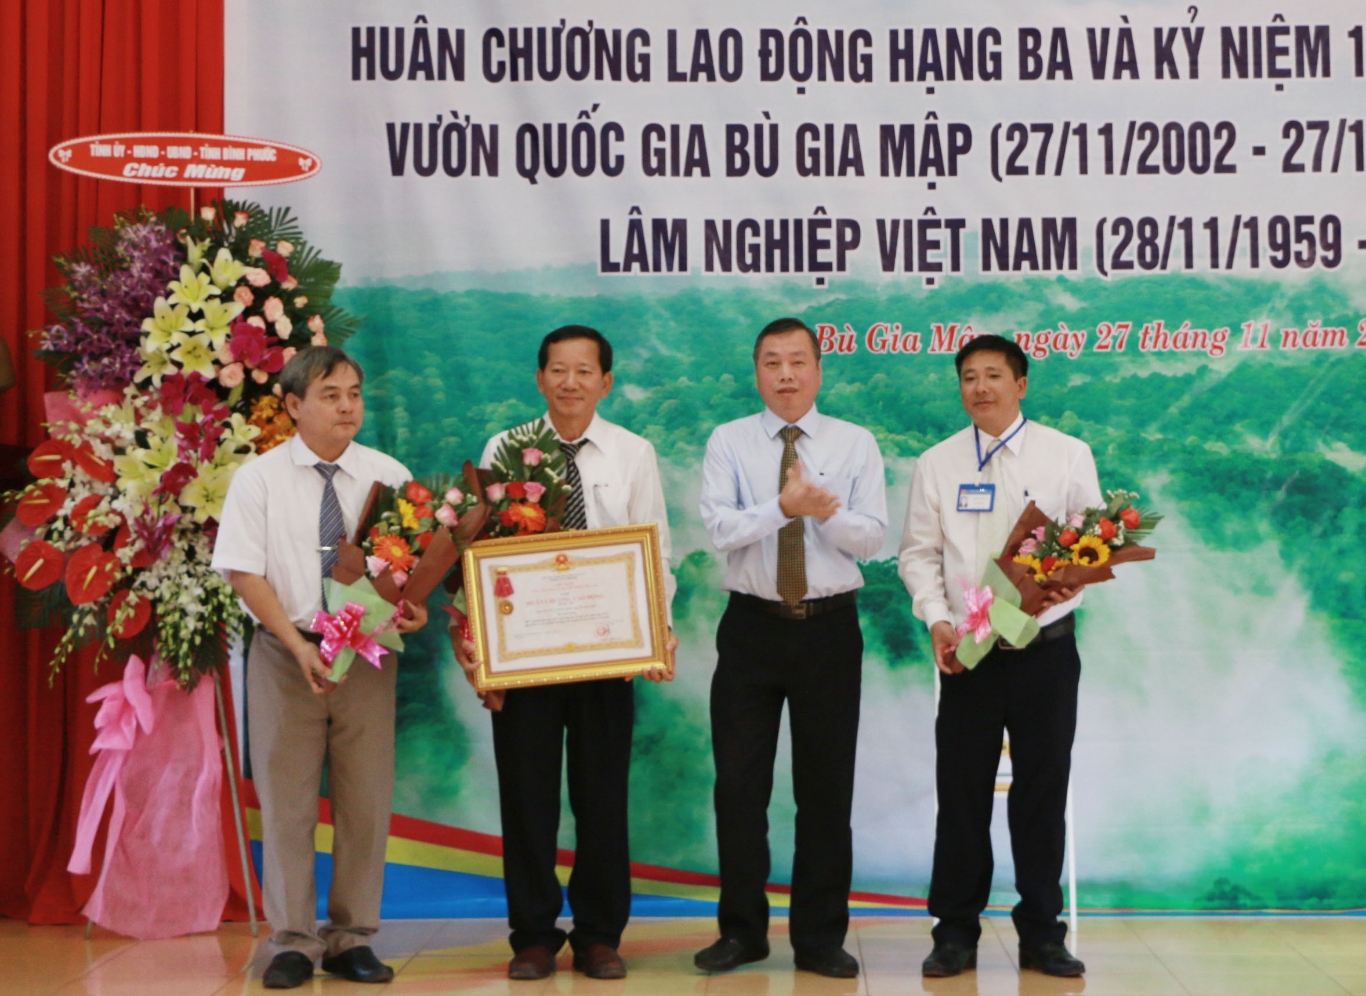 Vuon quoc gia BGM nhan Huan chuong Lao dong hang ba